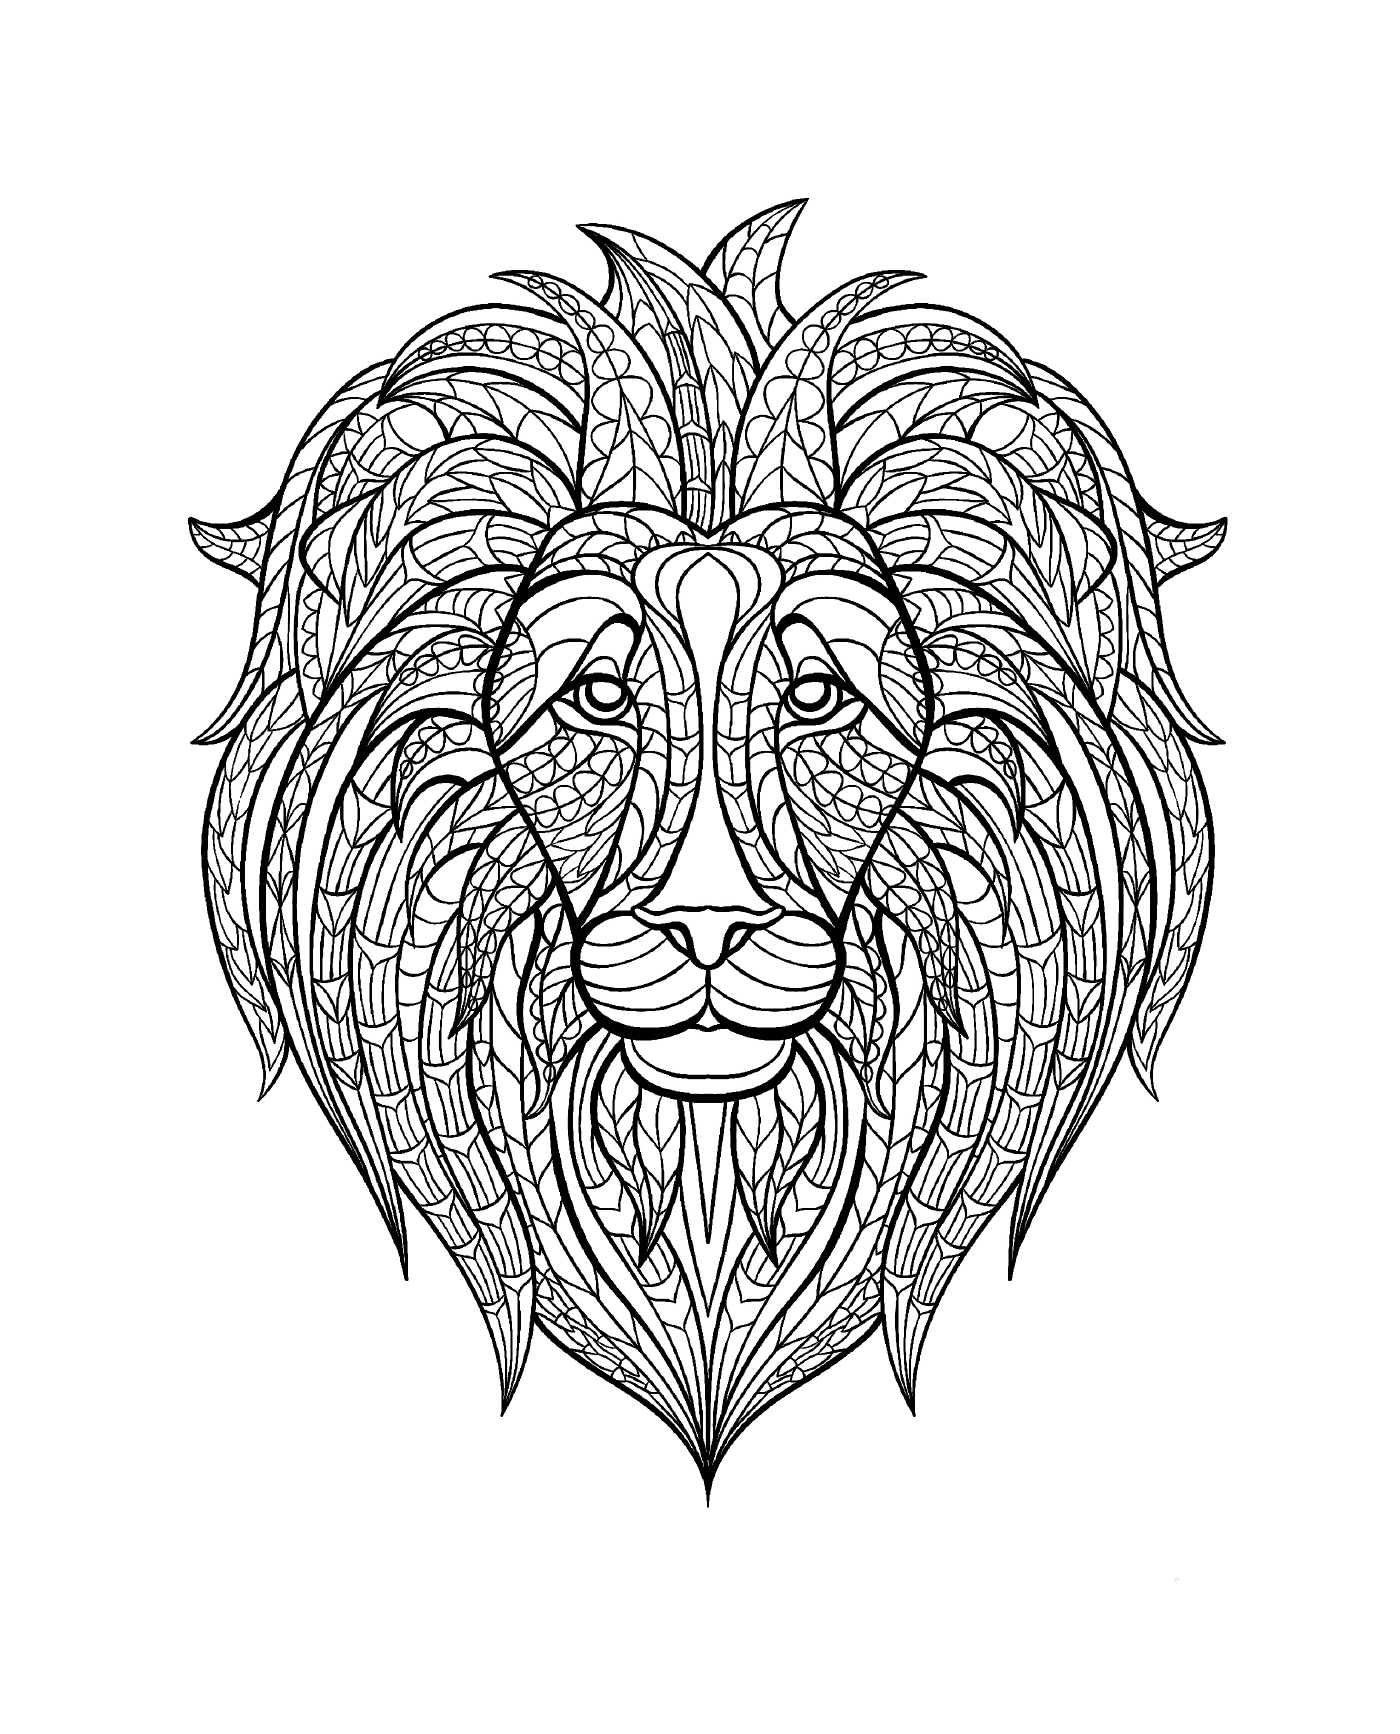  Голова льва с рисунком на лице 